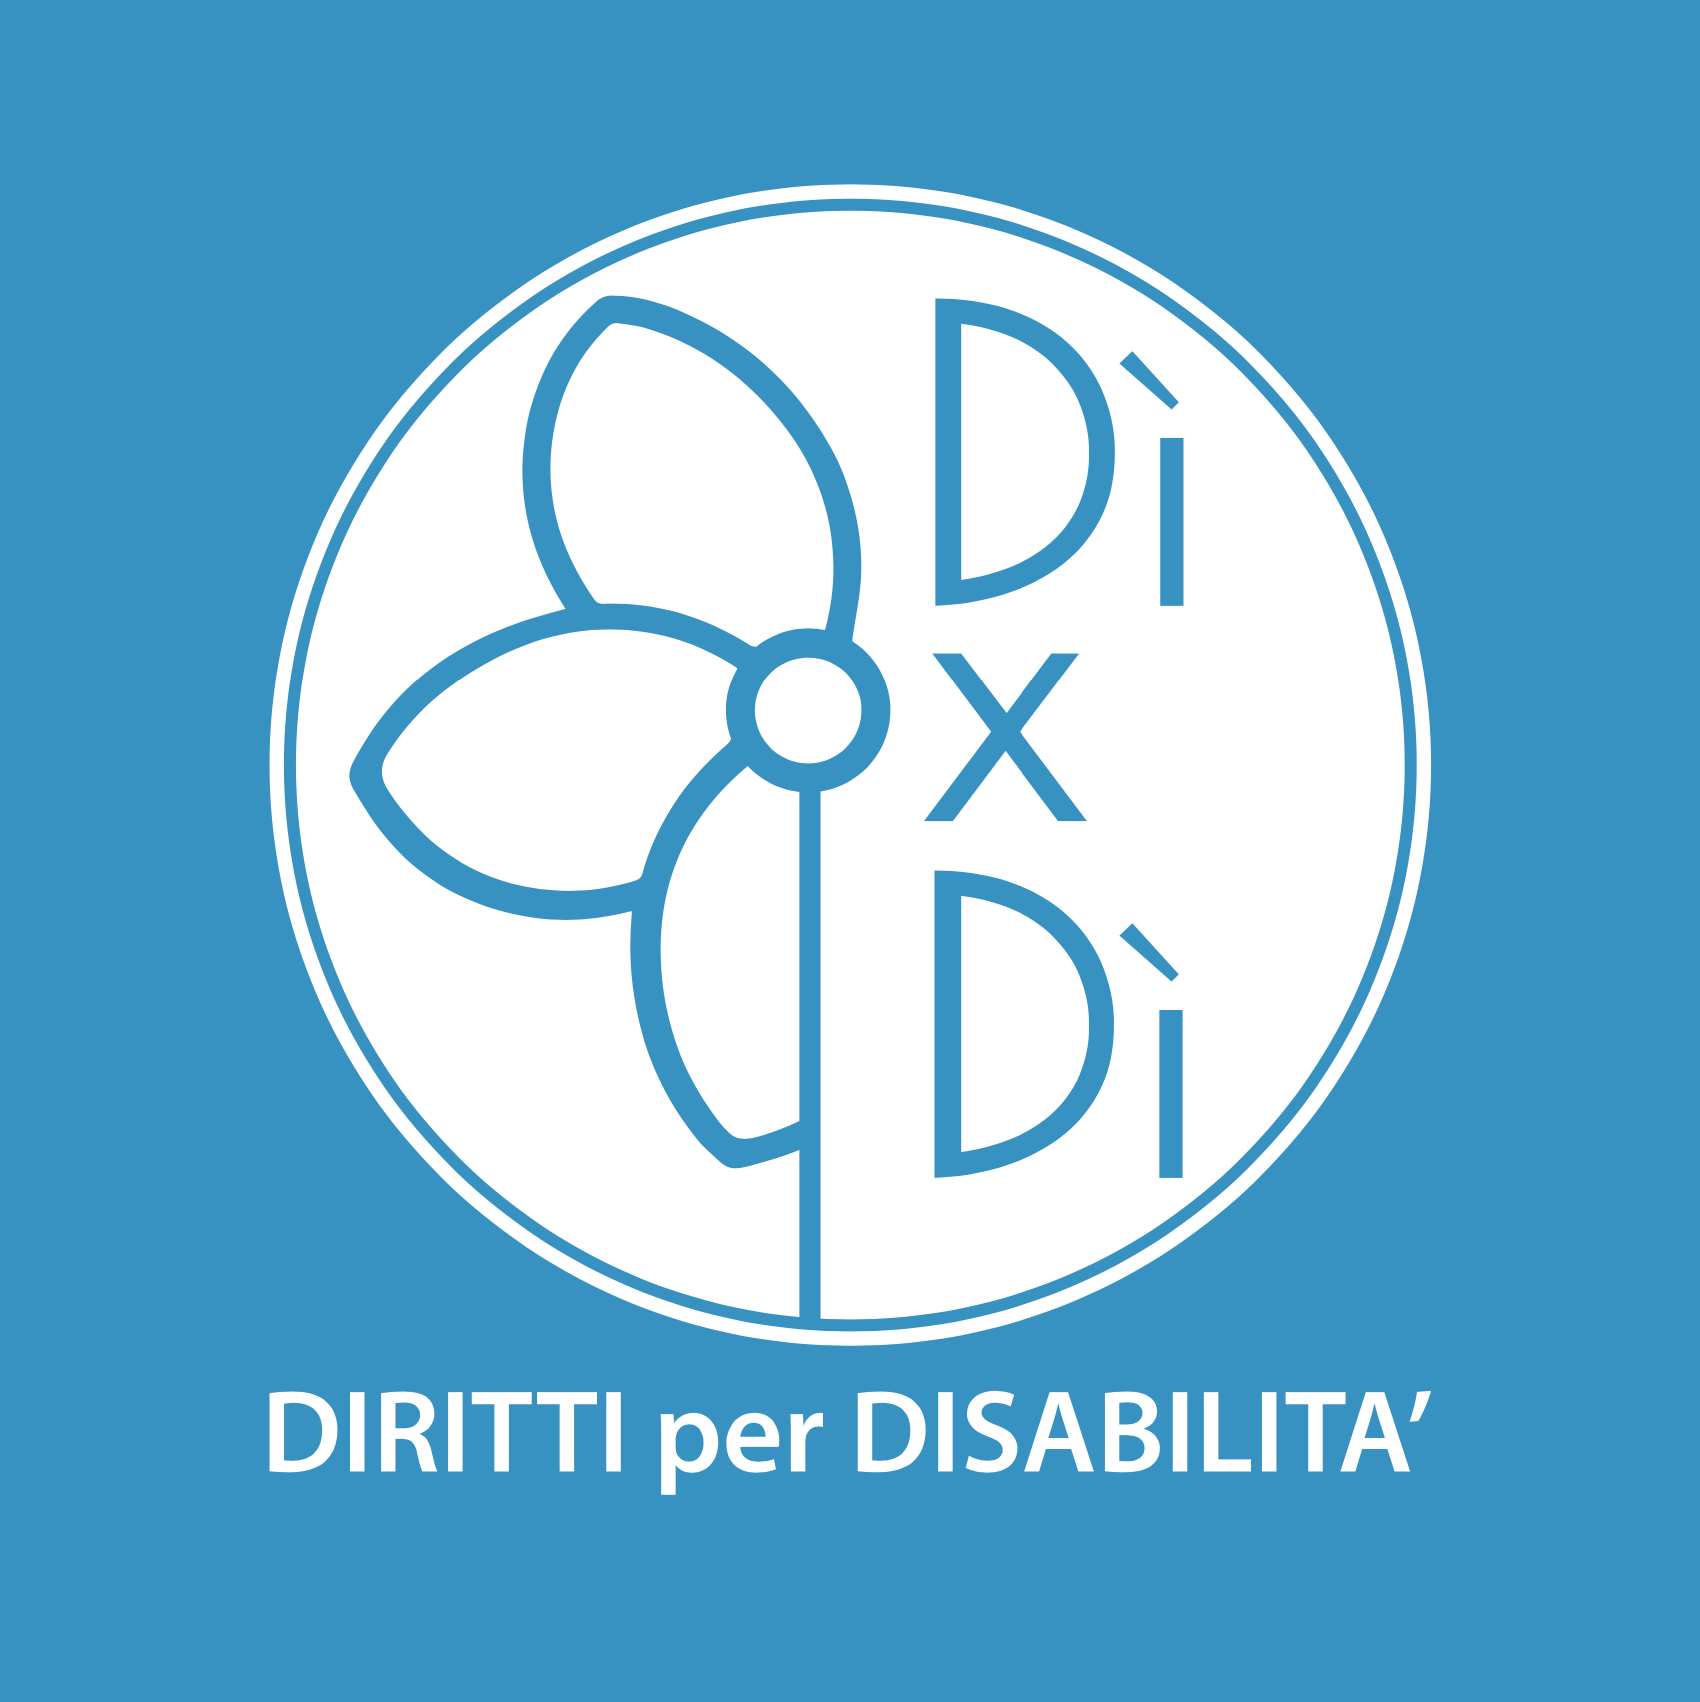 Comitato Diritti per Disabilità